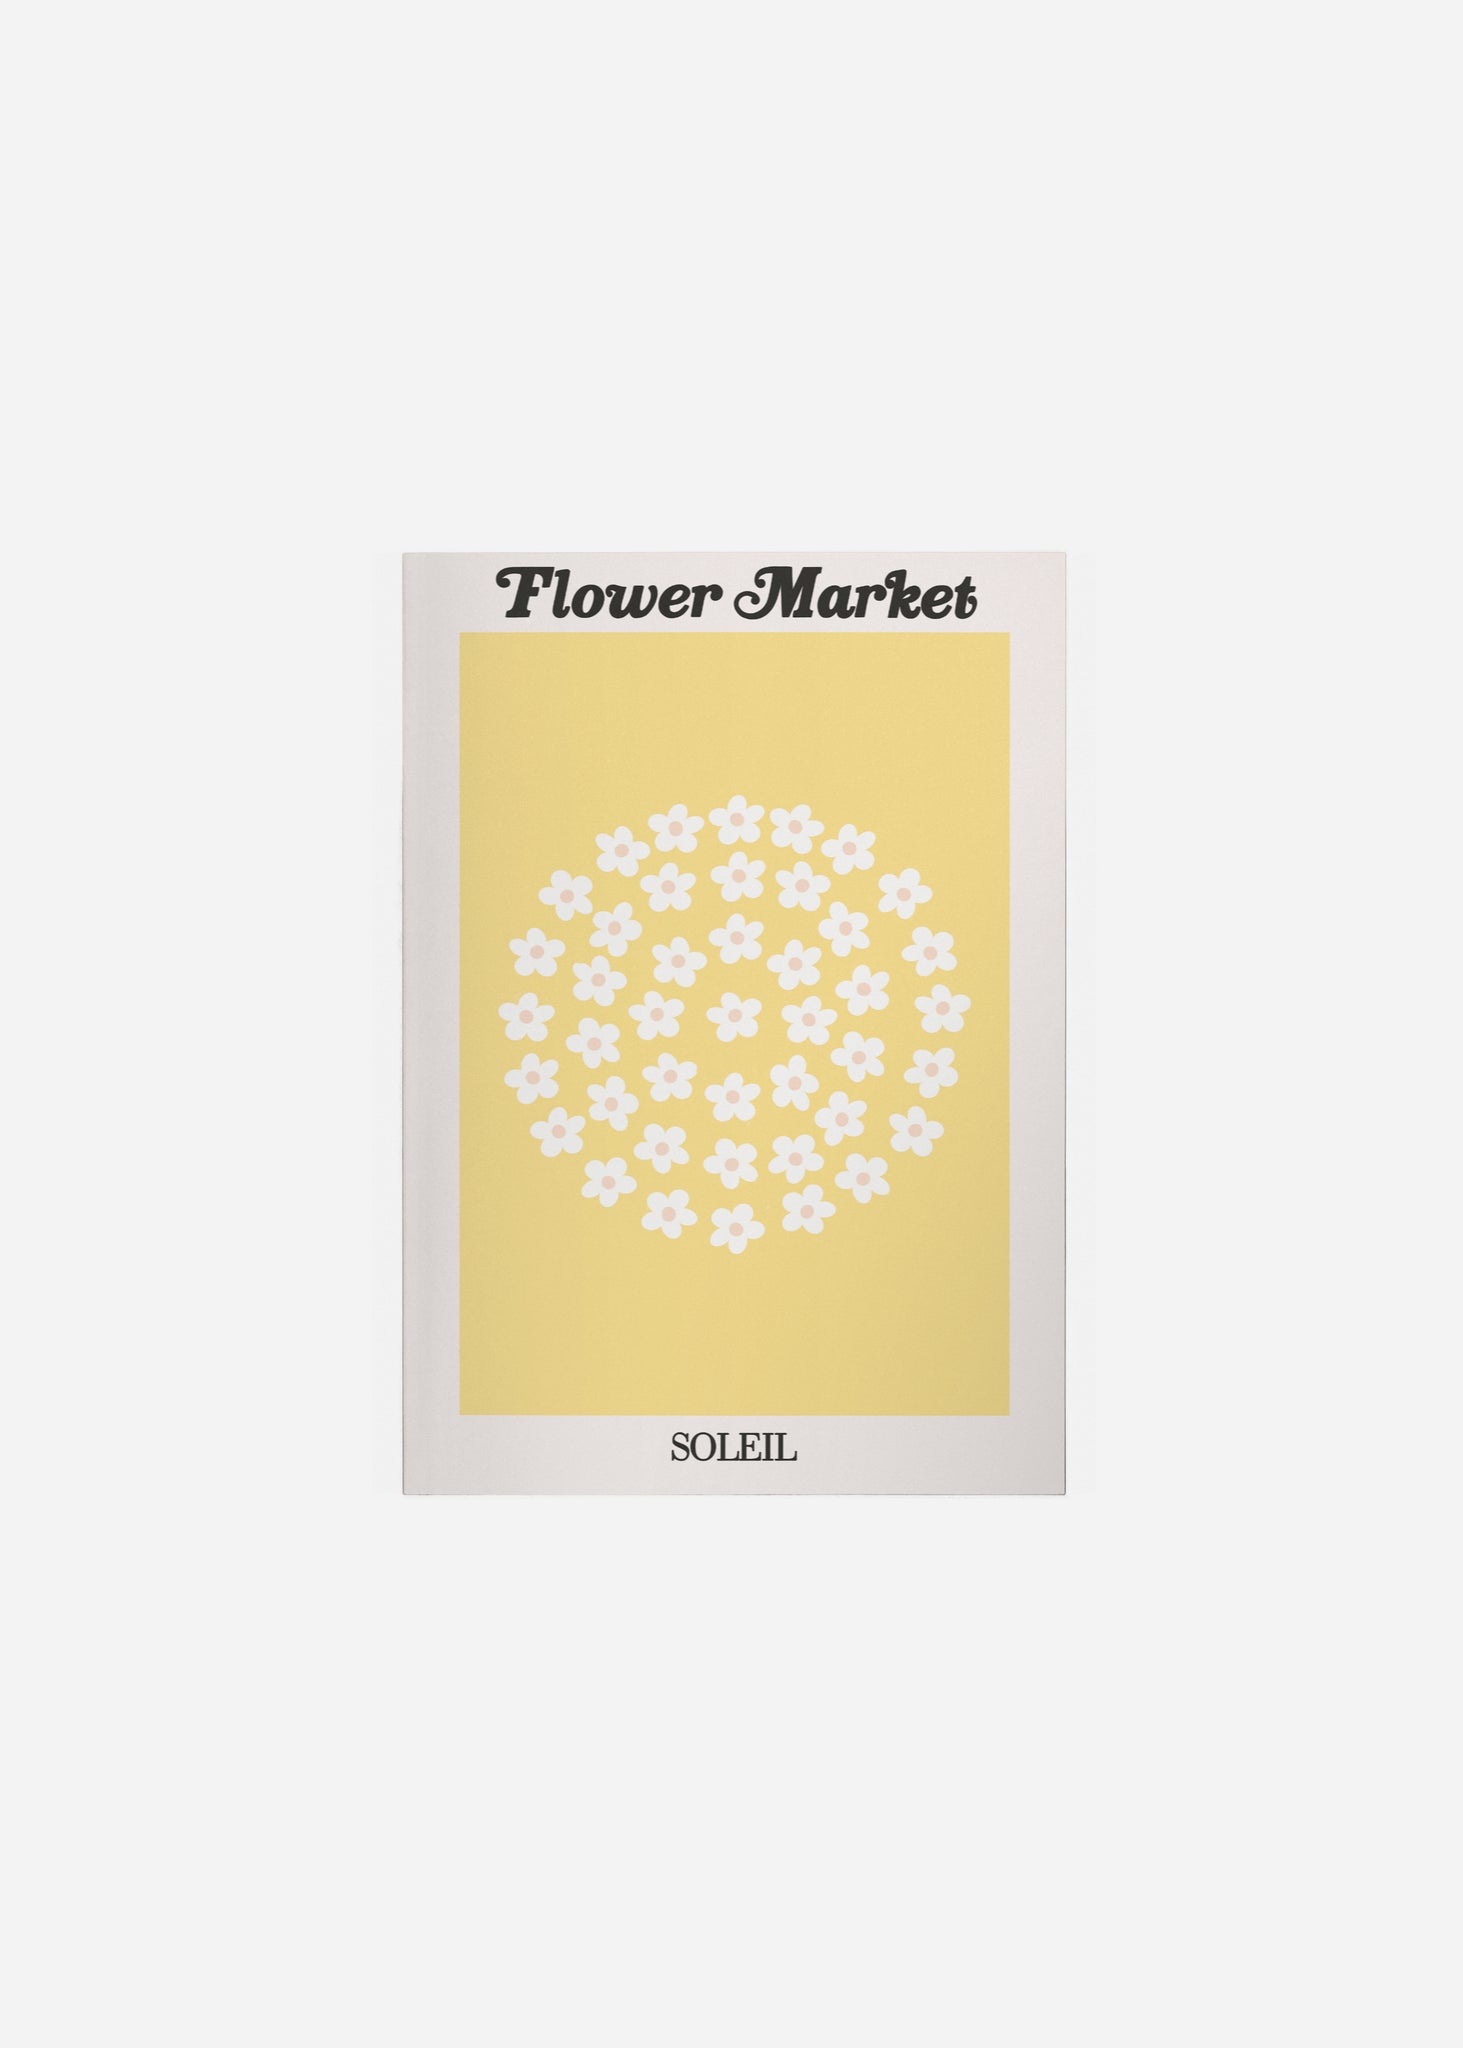 flower market / soleil Fine Art Print